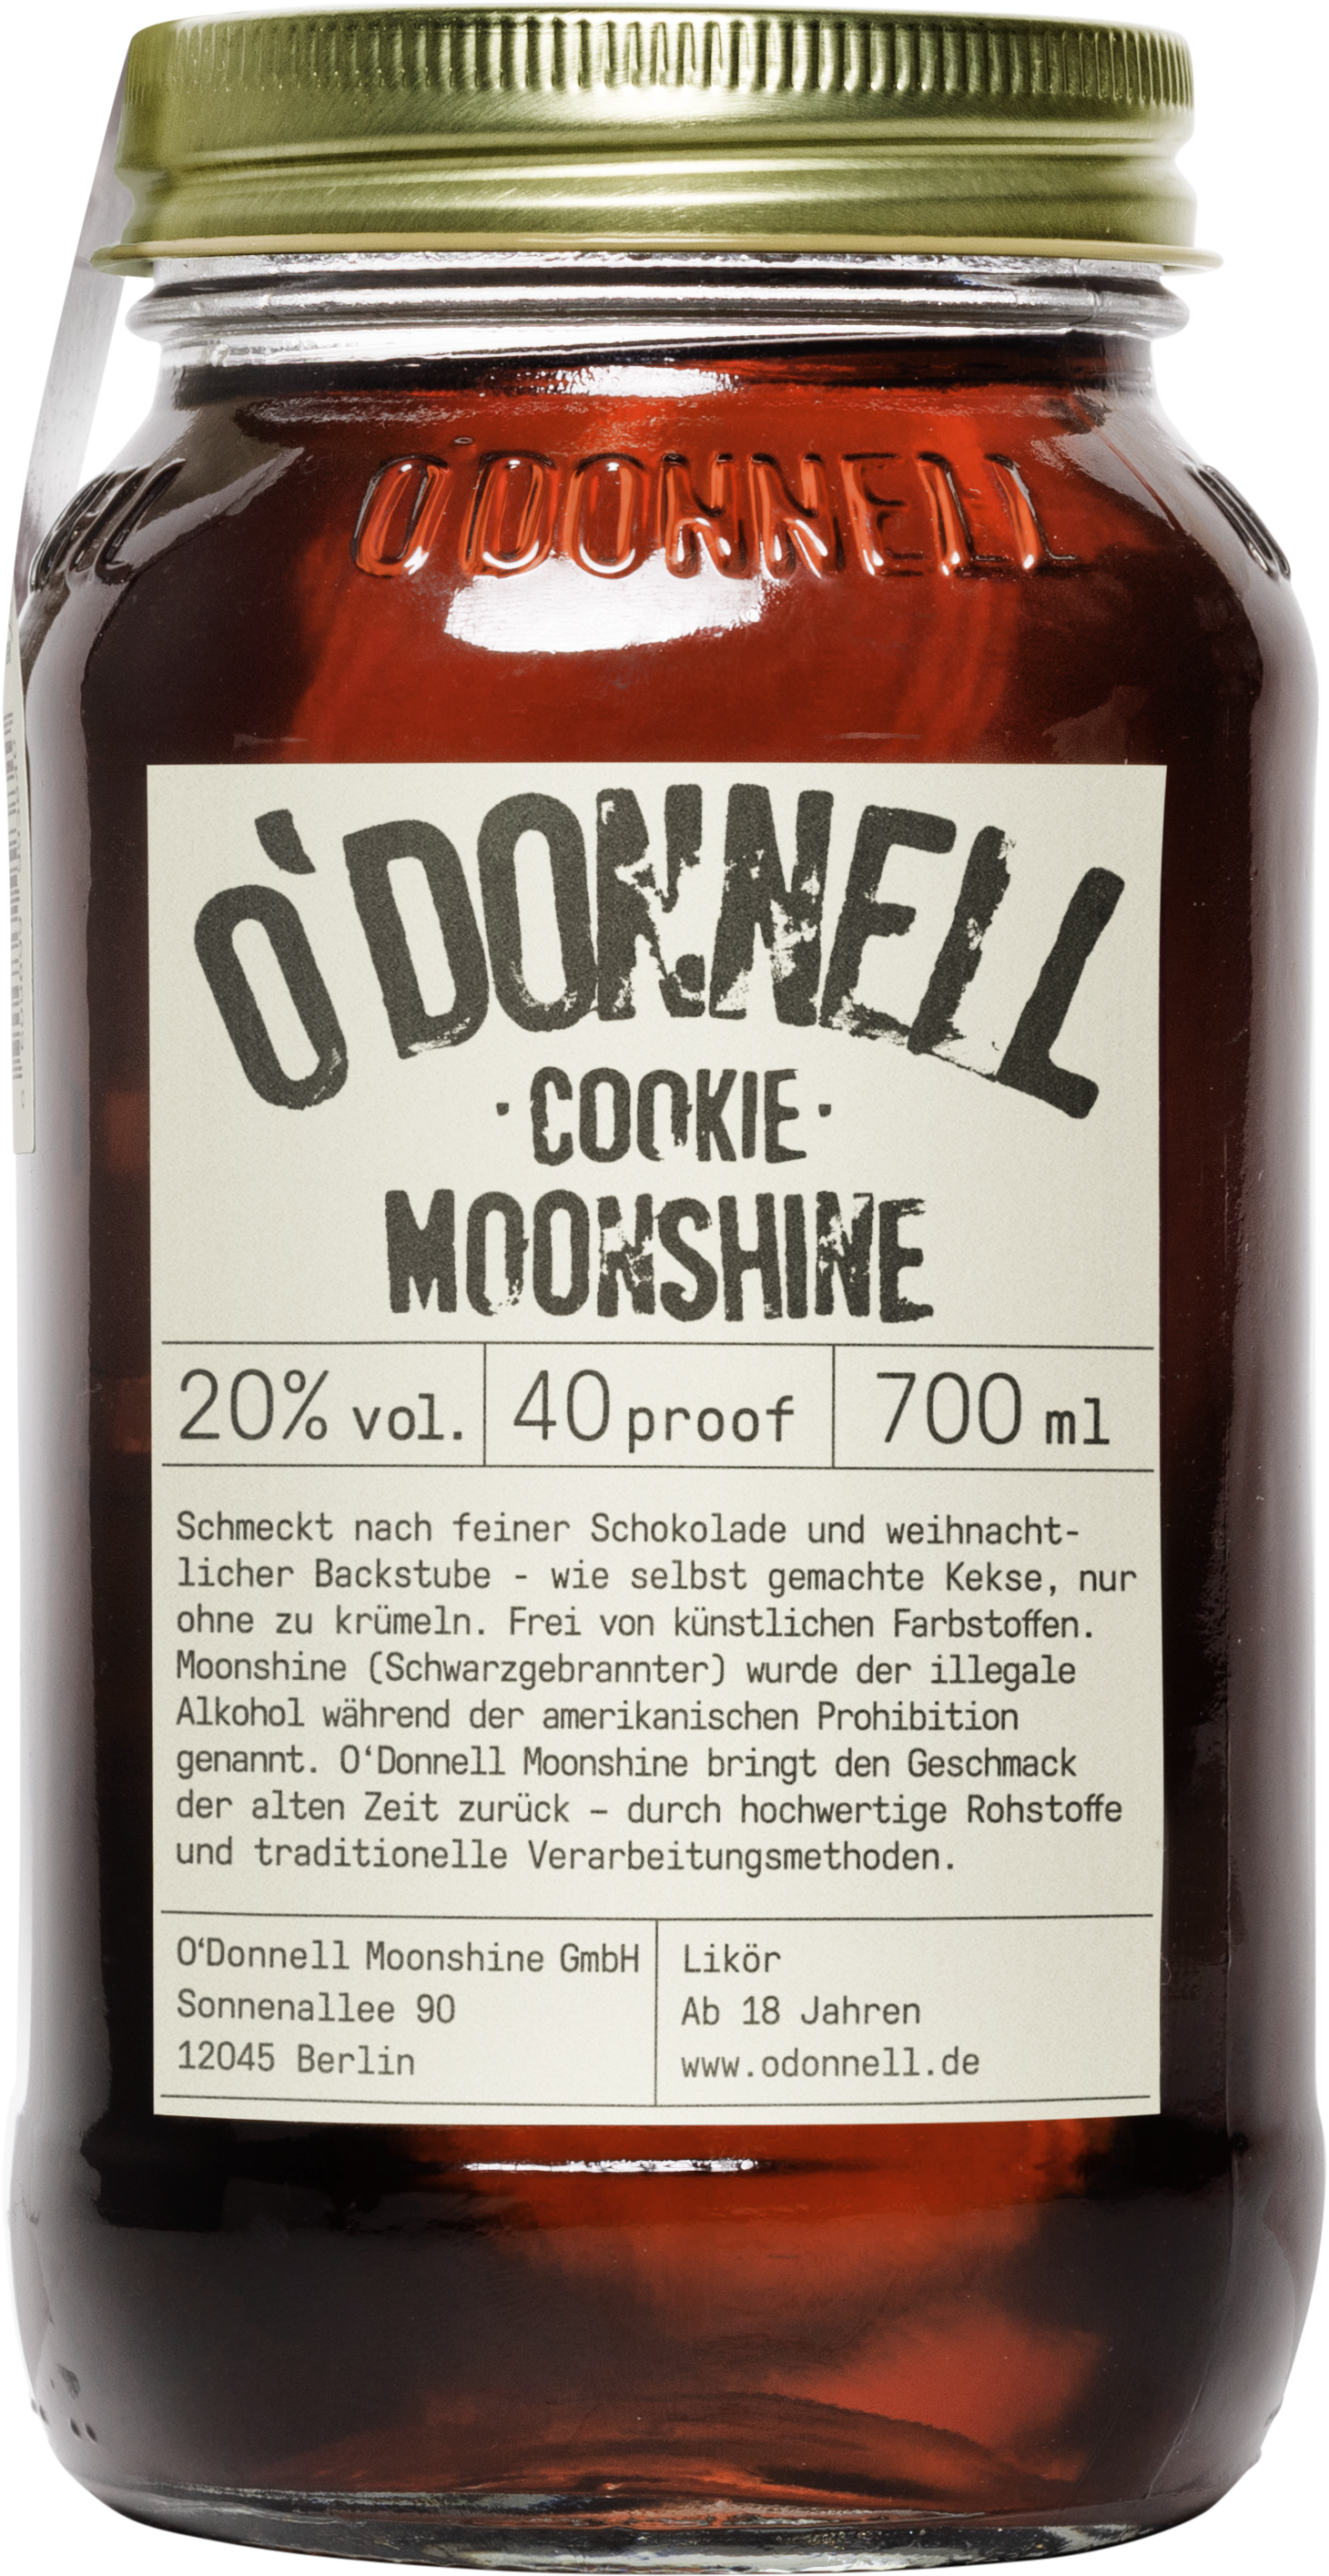 O'Donnell Moonshine - Cookie - Likör 0,7l 20%vol.